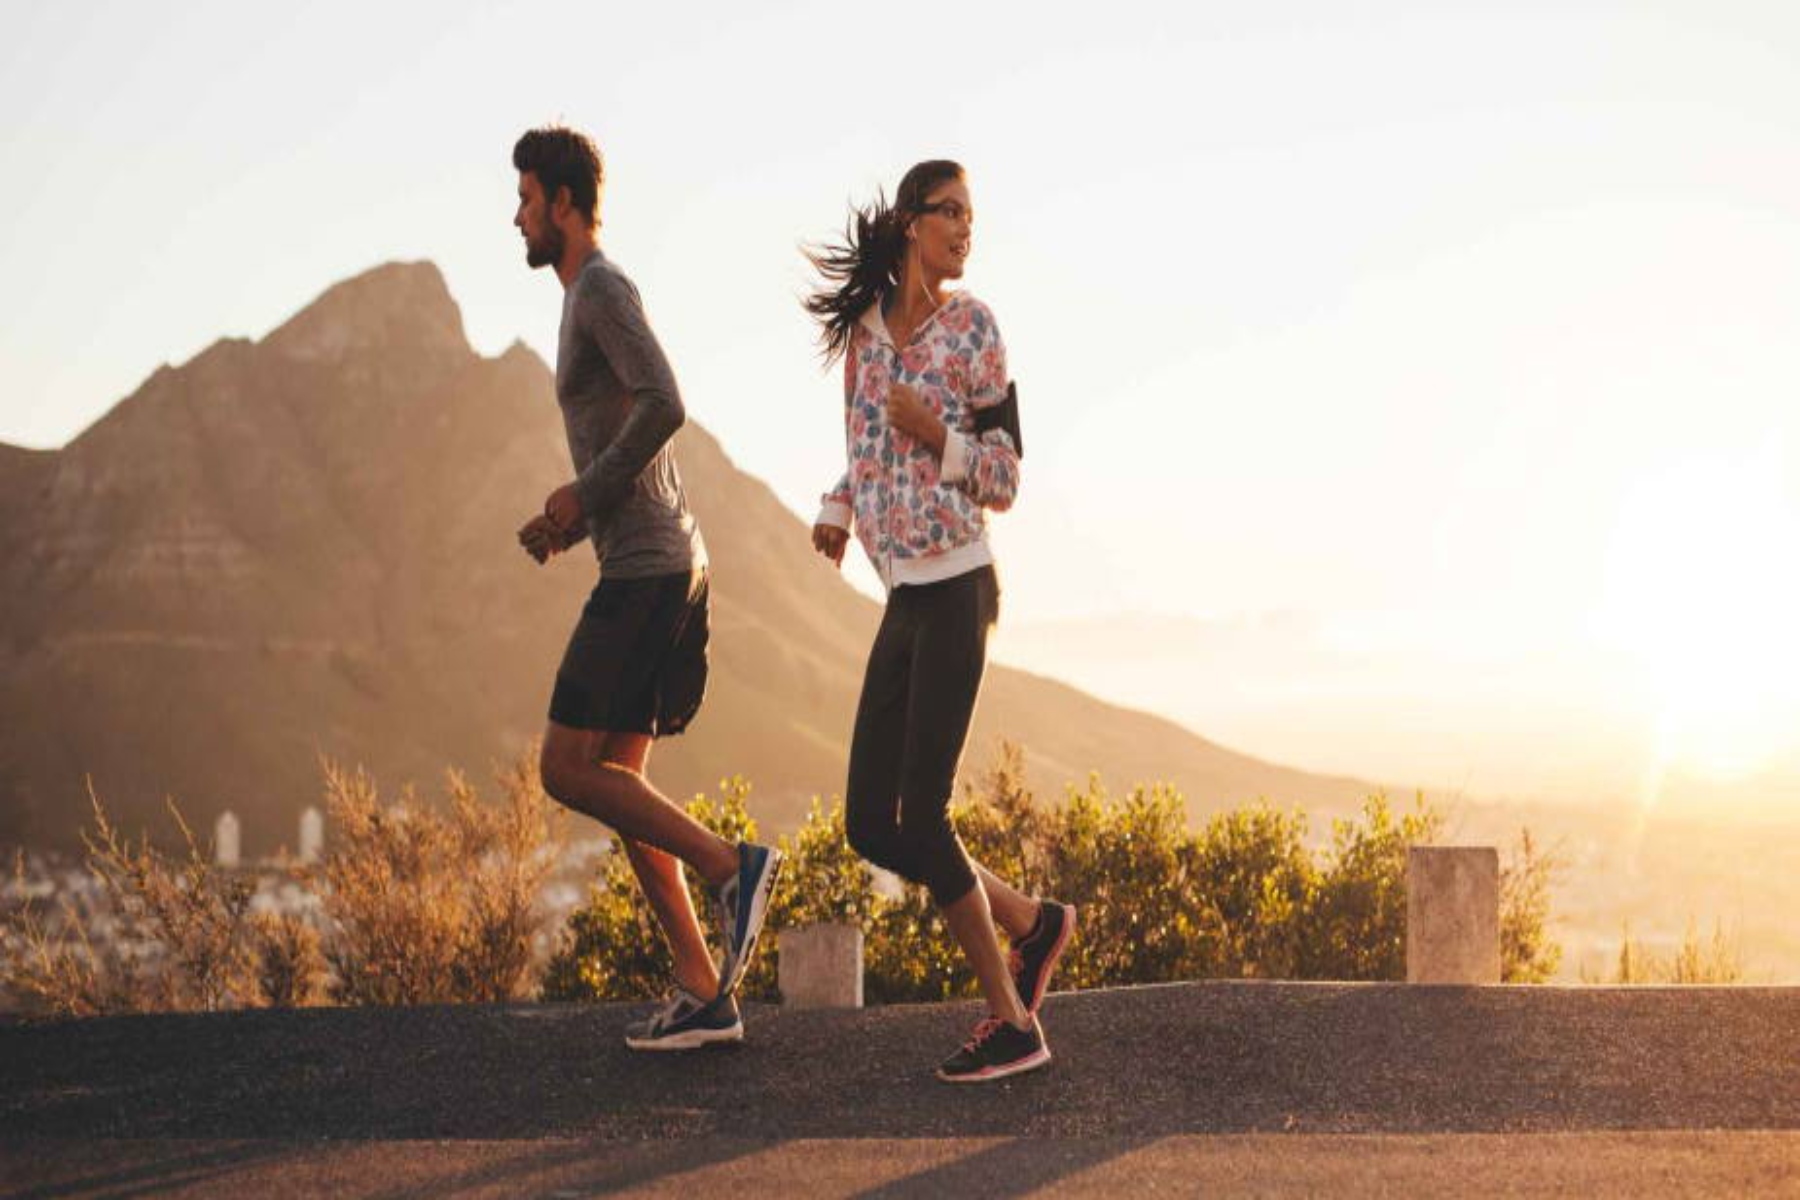 Τρέξιμο στομάχι: Τι γίνεται όταν τρέχουμε με άδειο στομάχι το πρωί;